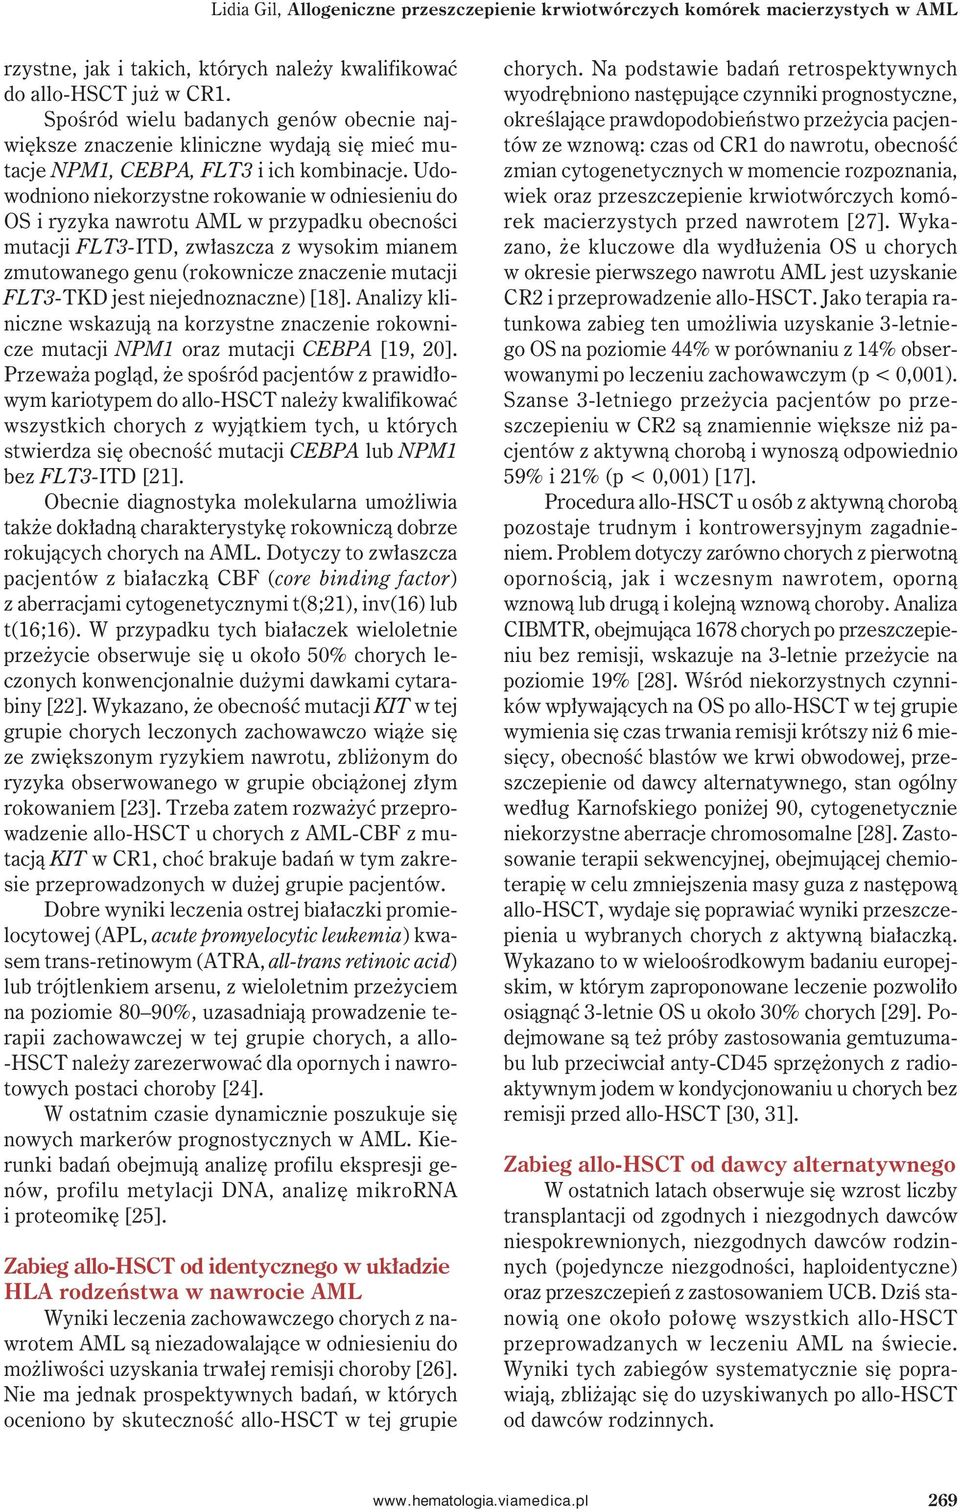 Udowodniono niekorzystne rokowanie w odniesieniu do OS i ryzyka nawrotu AML w przypadku obecności mutacji FLT3-ITD, zwłaszcza z wysokim mianem zmutowanego genu (rokownicze znaczenie mutacji FLT3-TKD